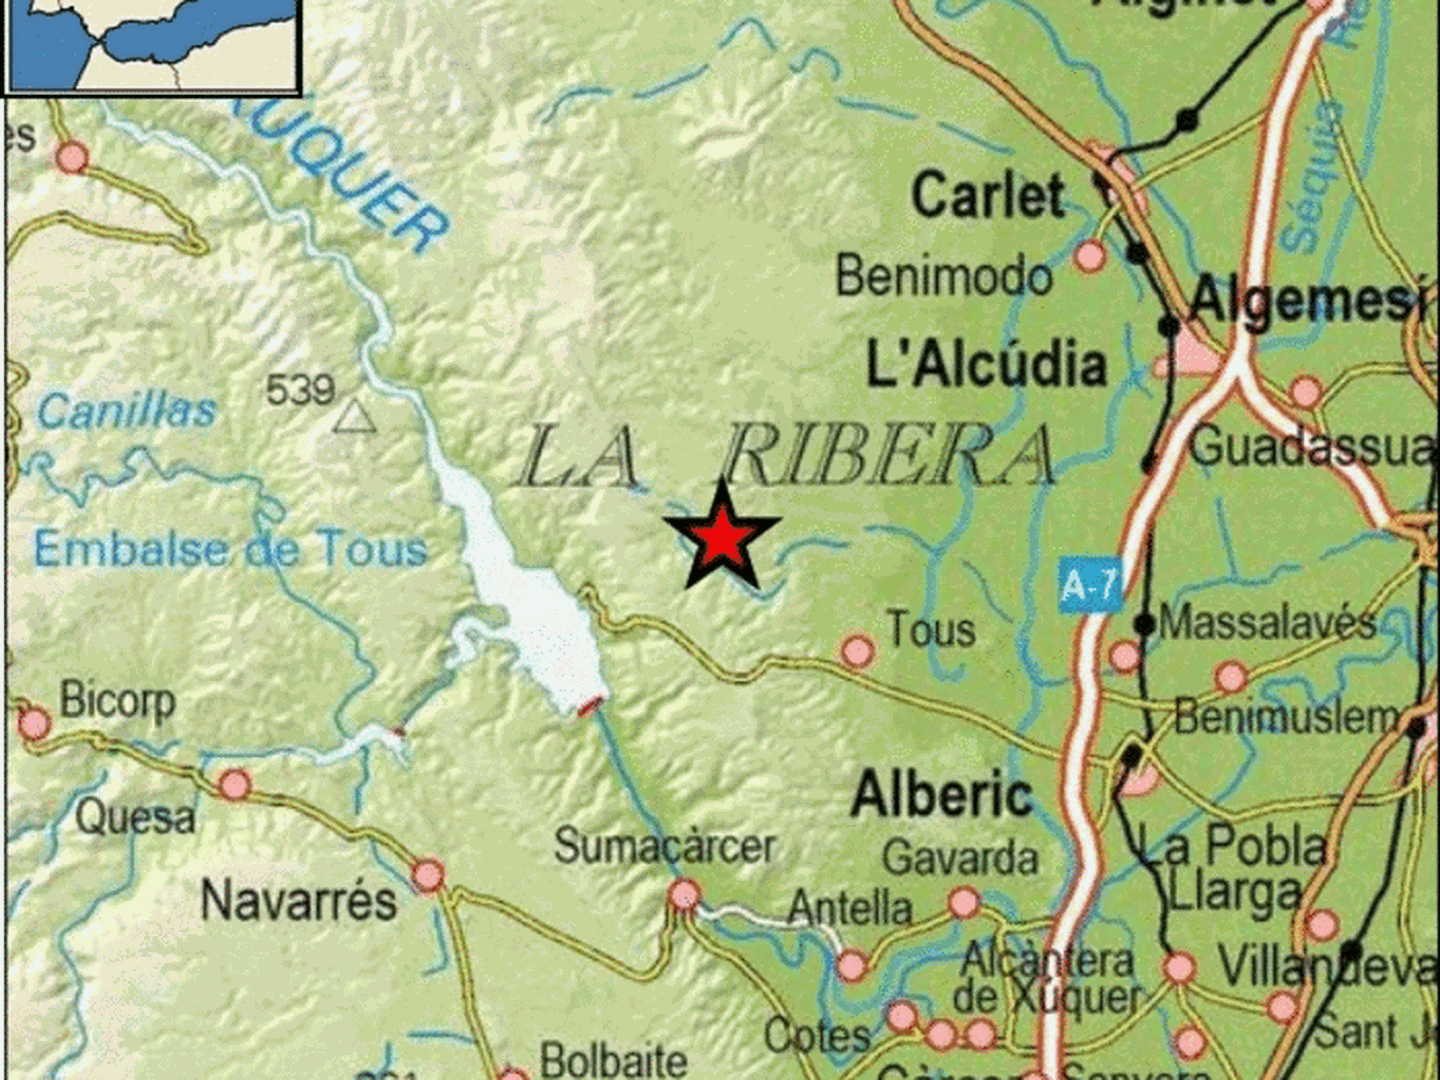 Epicentro del terremoto en las proximidades de Tous. (IGN)